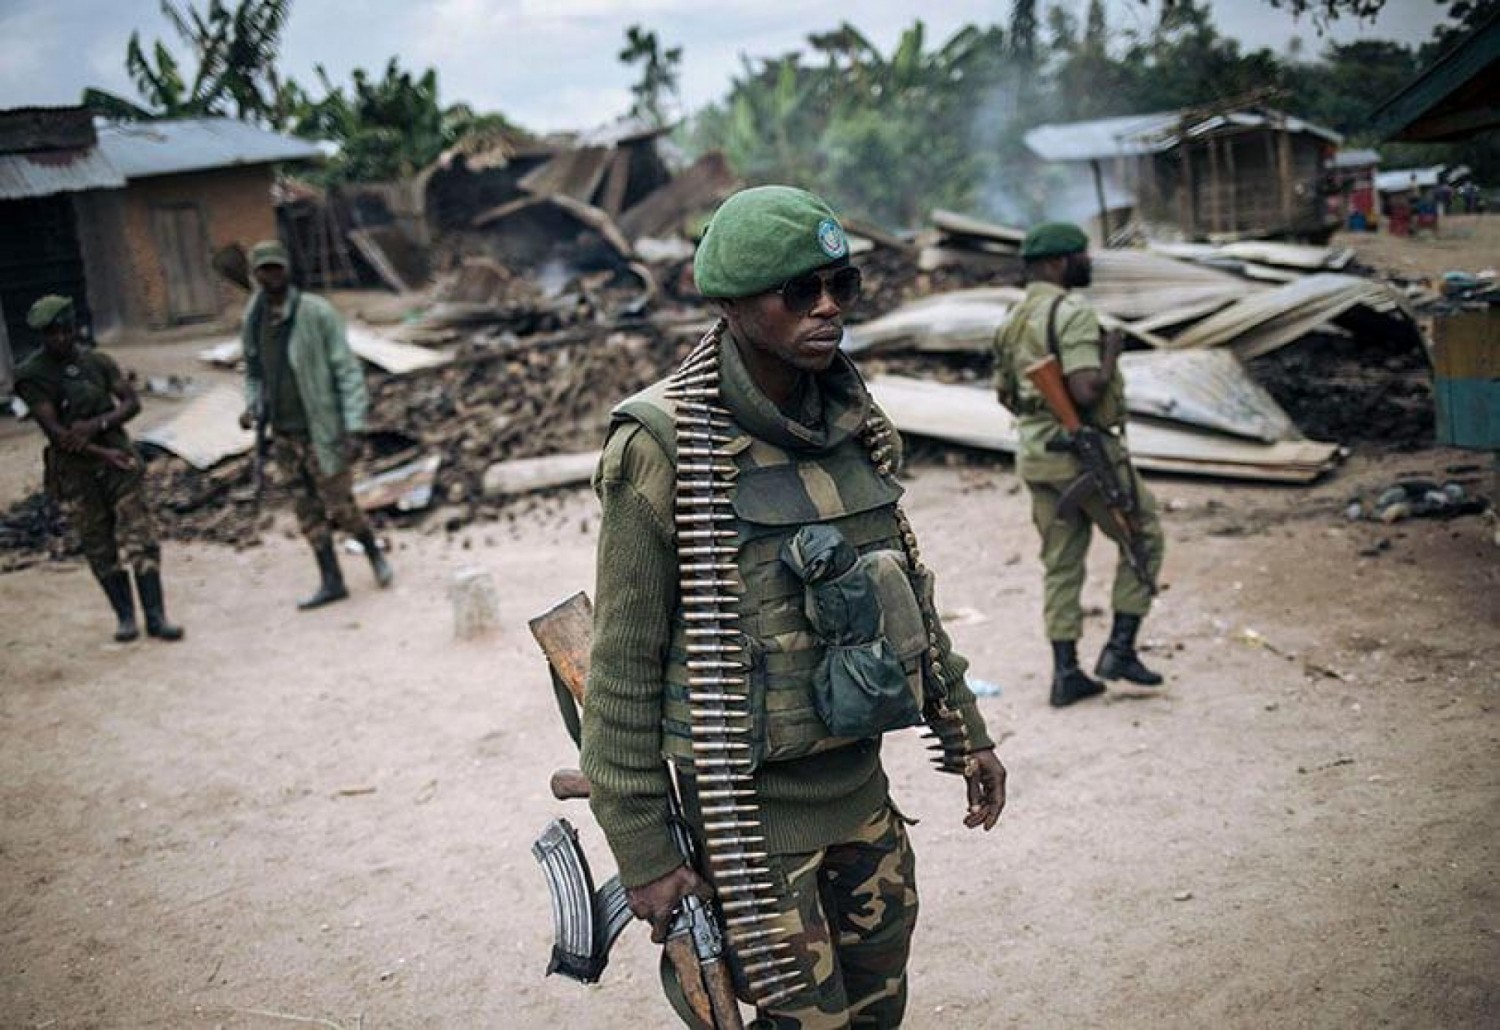 RDC : Enlèvement de 25 adolescents dans trois villages du nord, les assaillants recherchés